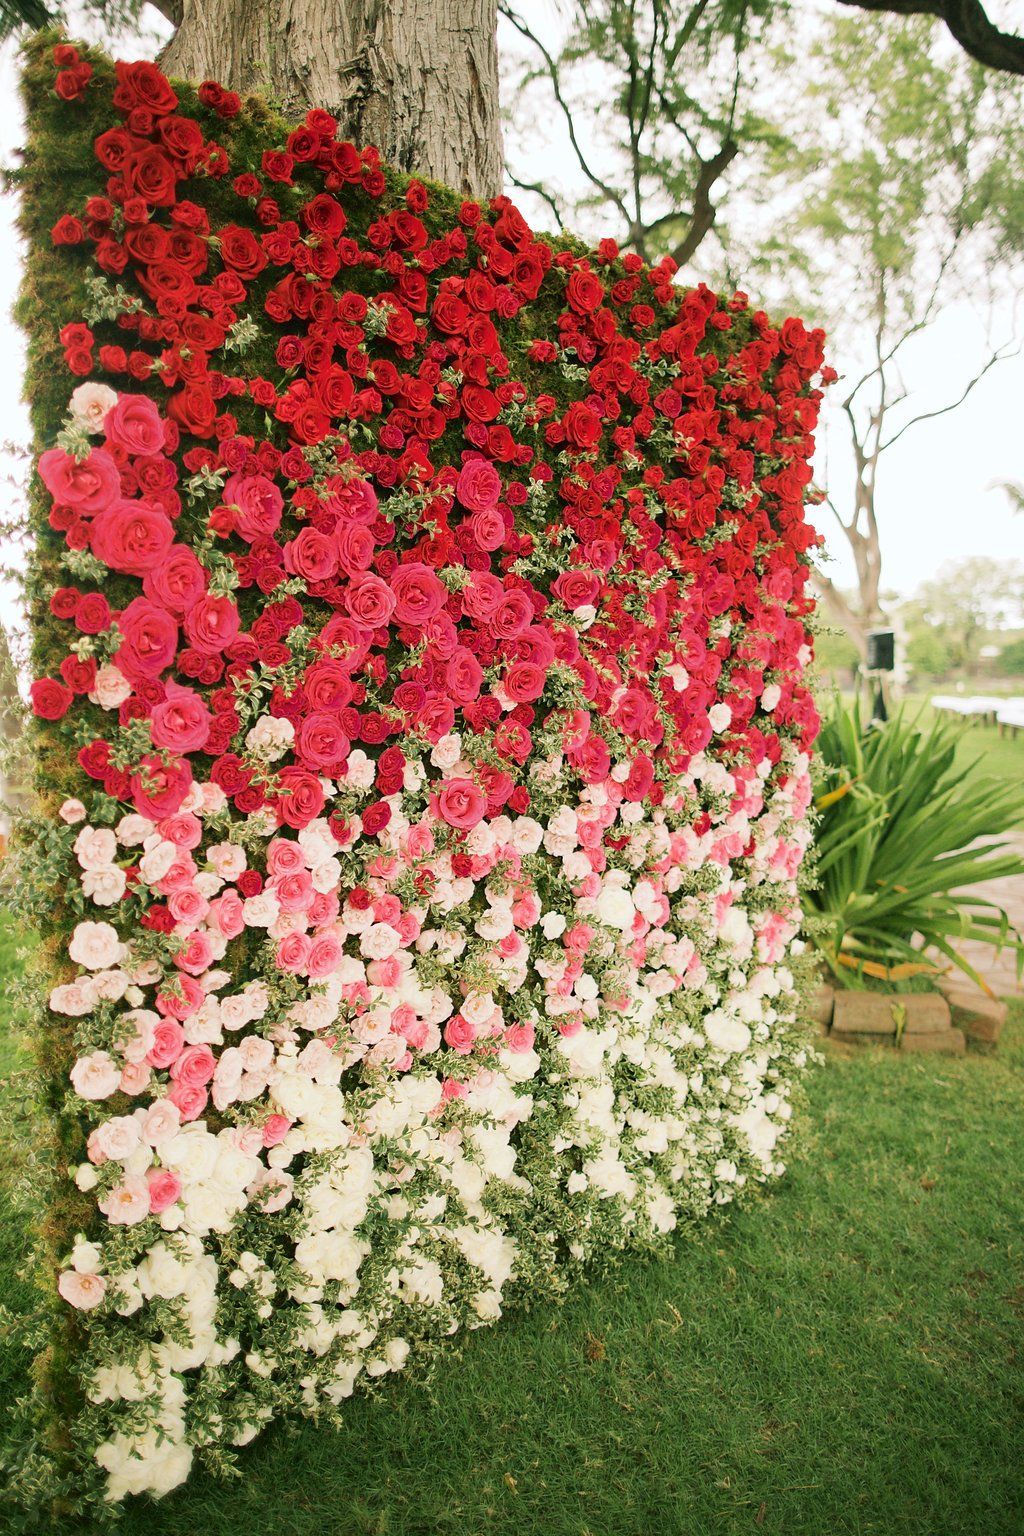 Ombre rose backdrop by Teresa Sena Design – Anna Kim Photography